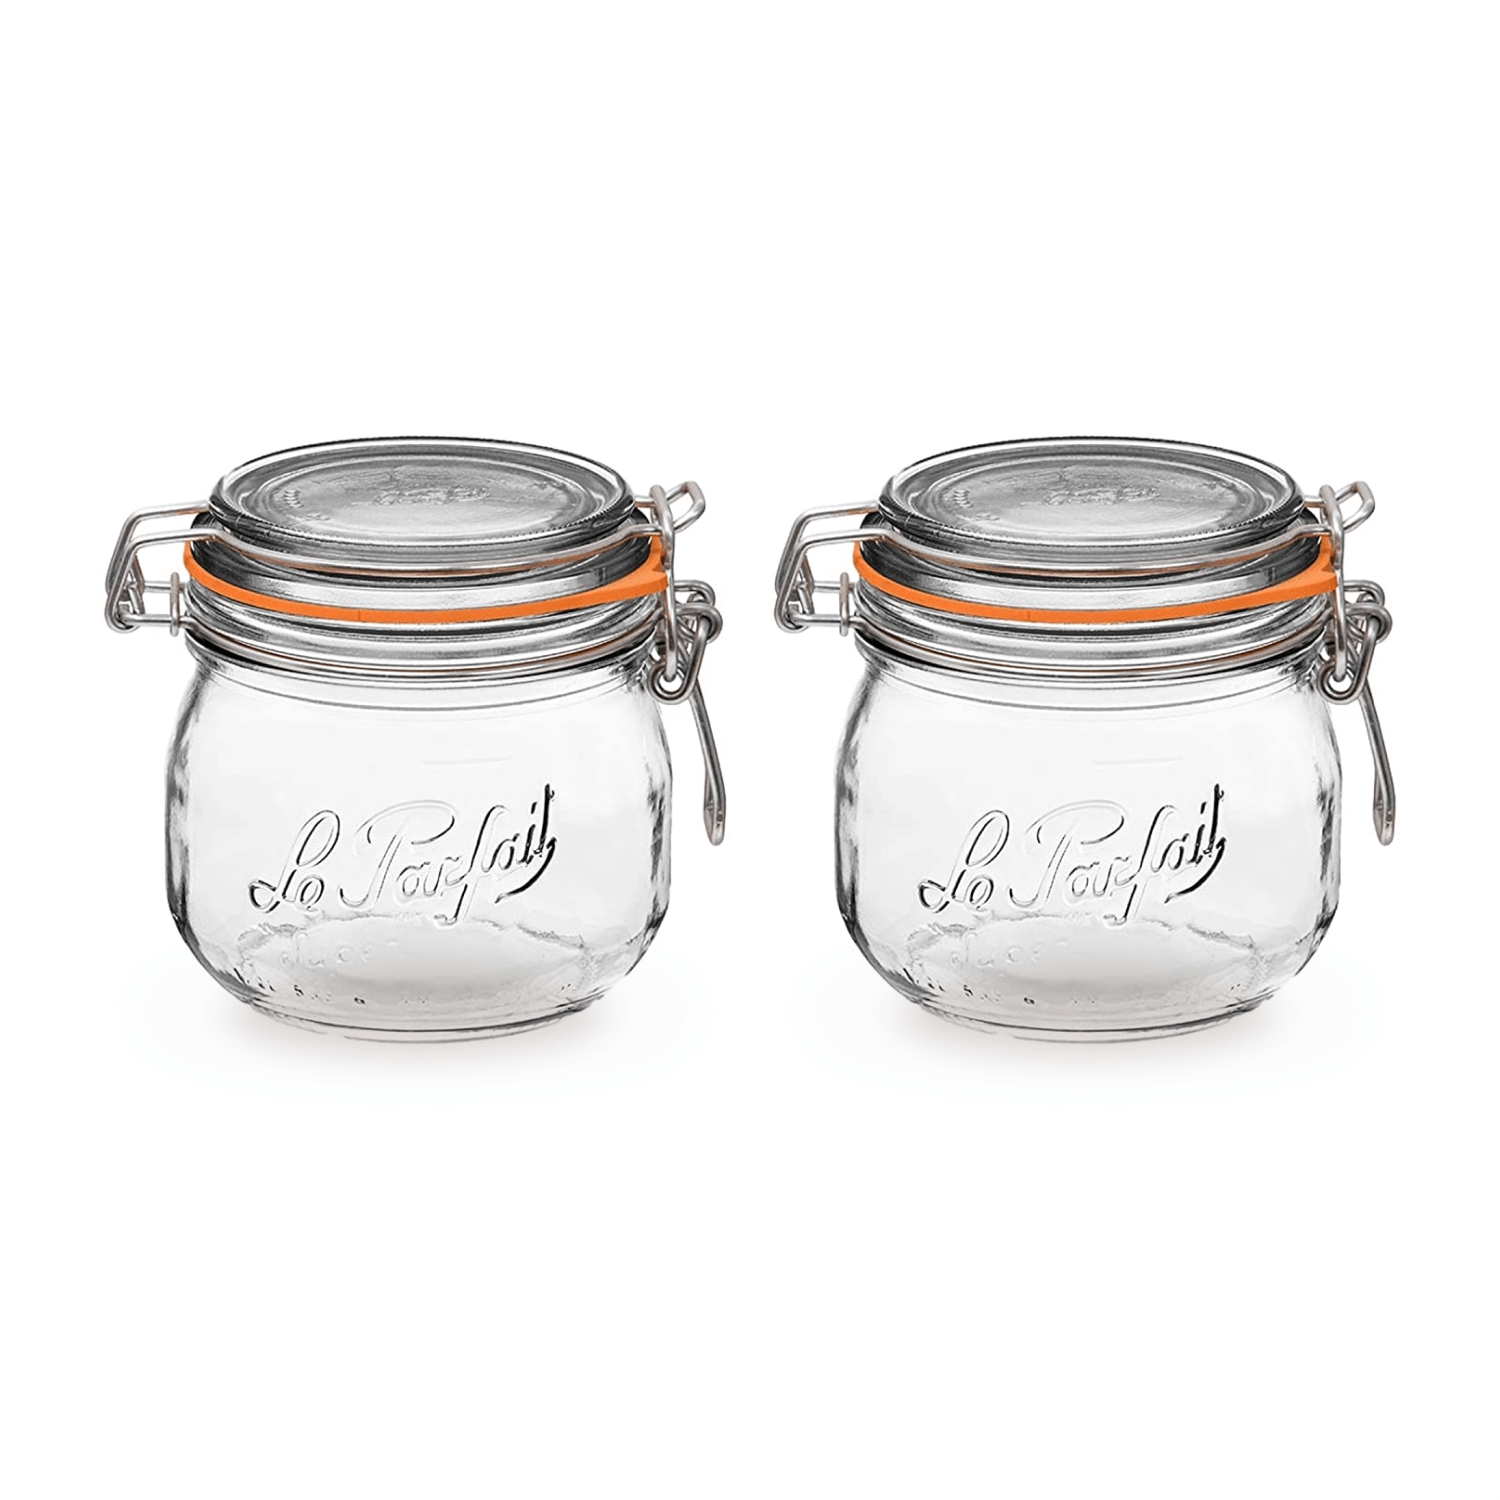 Le Parfait Super Jars (Set of 2) - 르파페 피클병 밀폐유리병